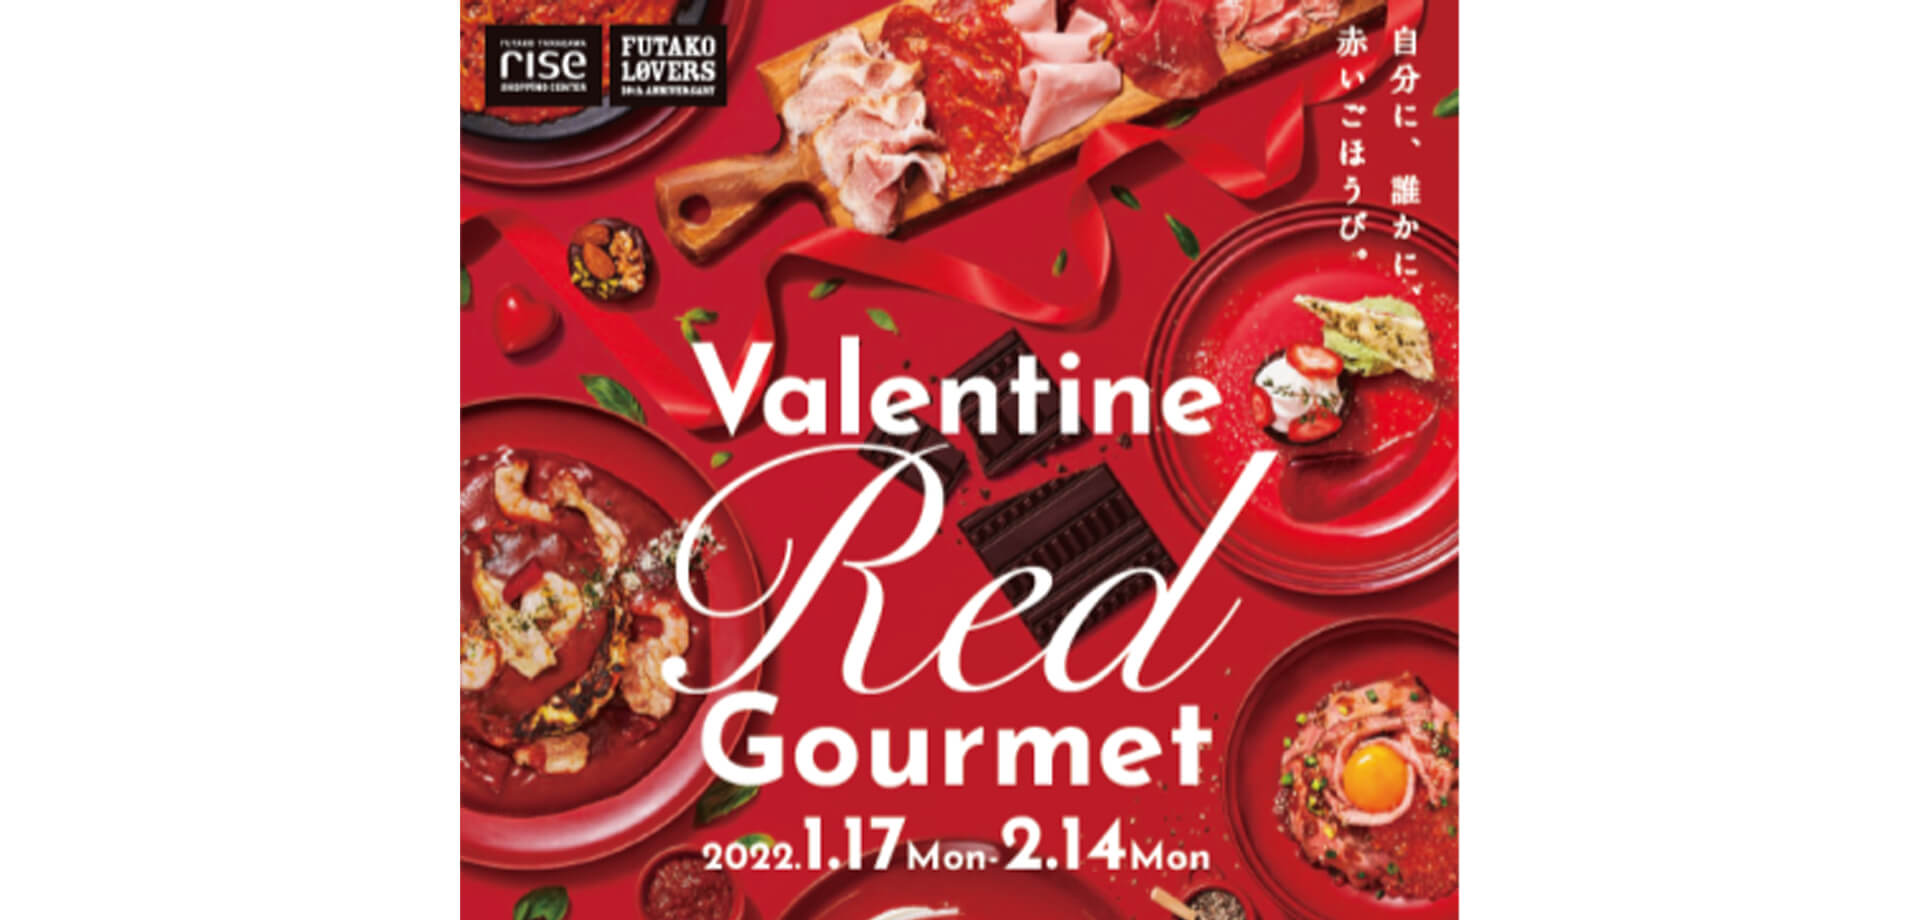 二子玉川ライズ「Valentine Red Gourmet」